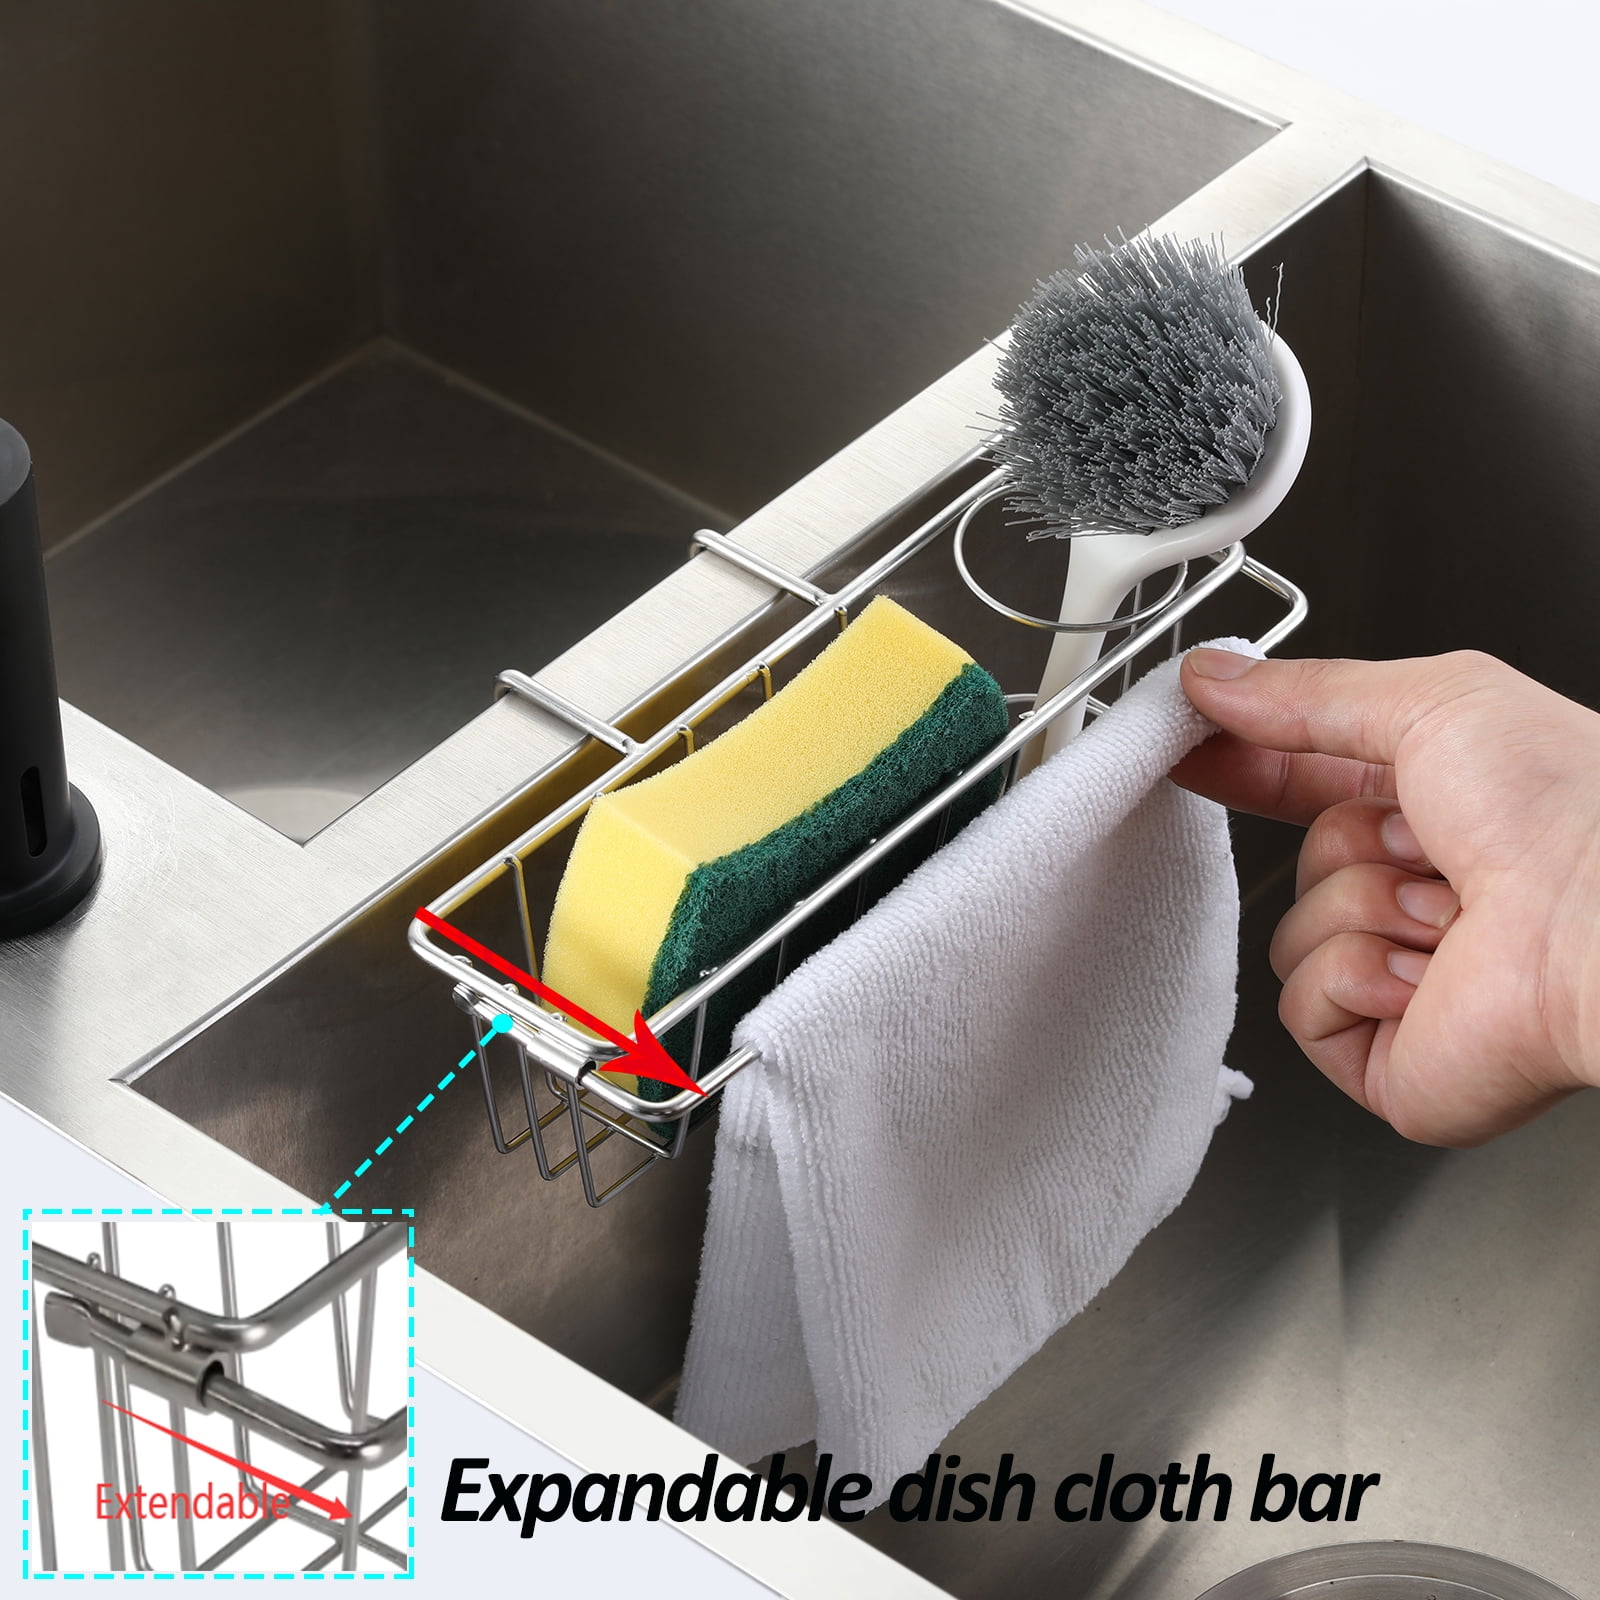 HUMUTA 3 in 1 sponge holder for kitchen sink, stainless steel in